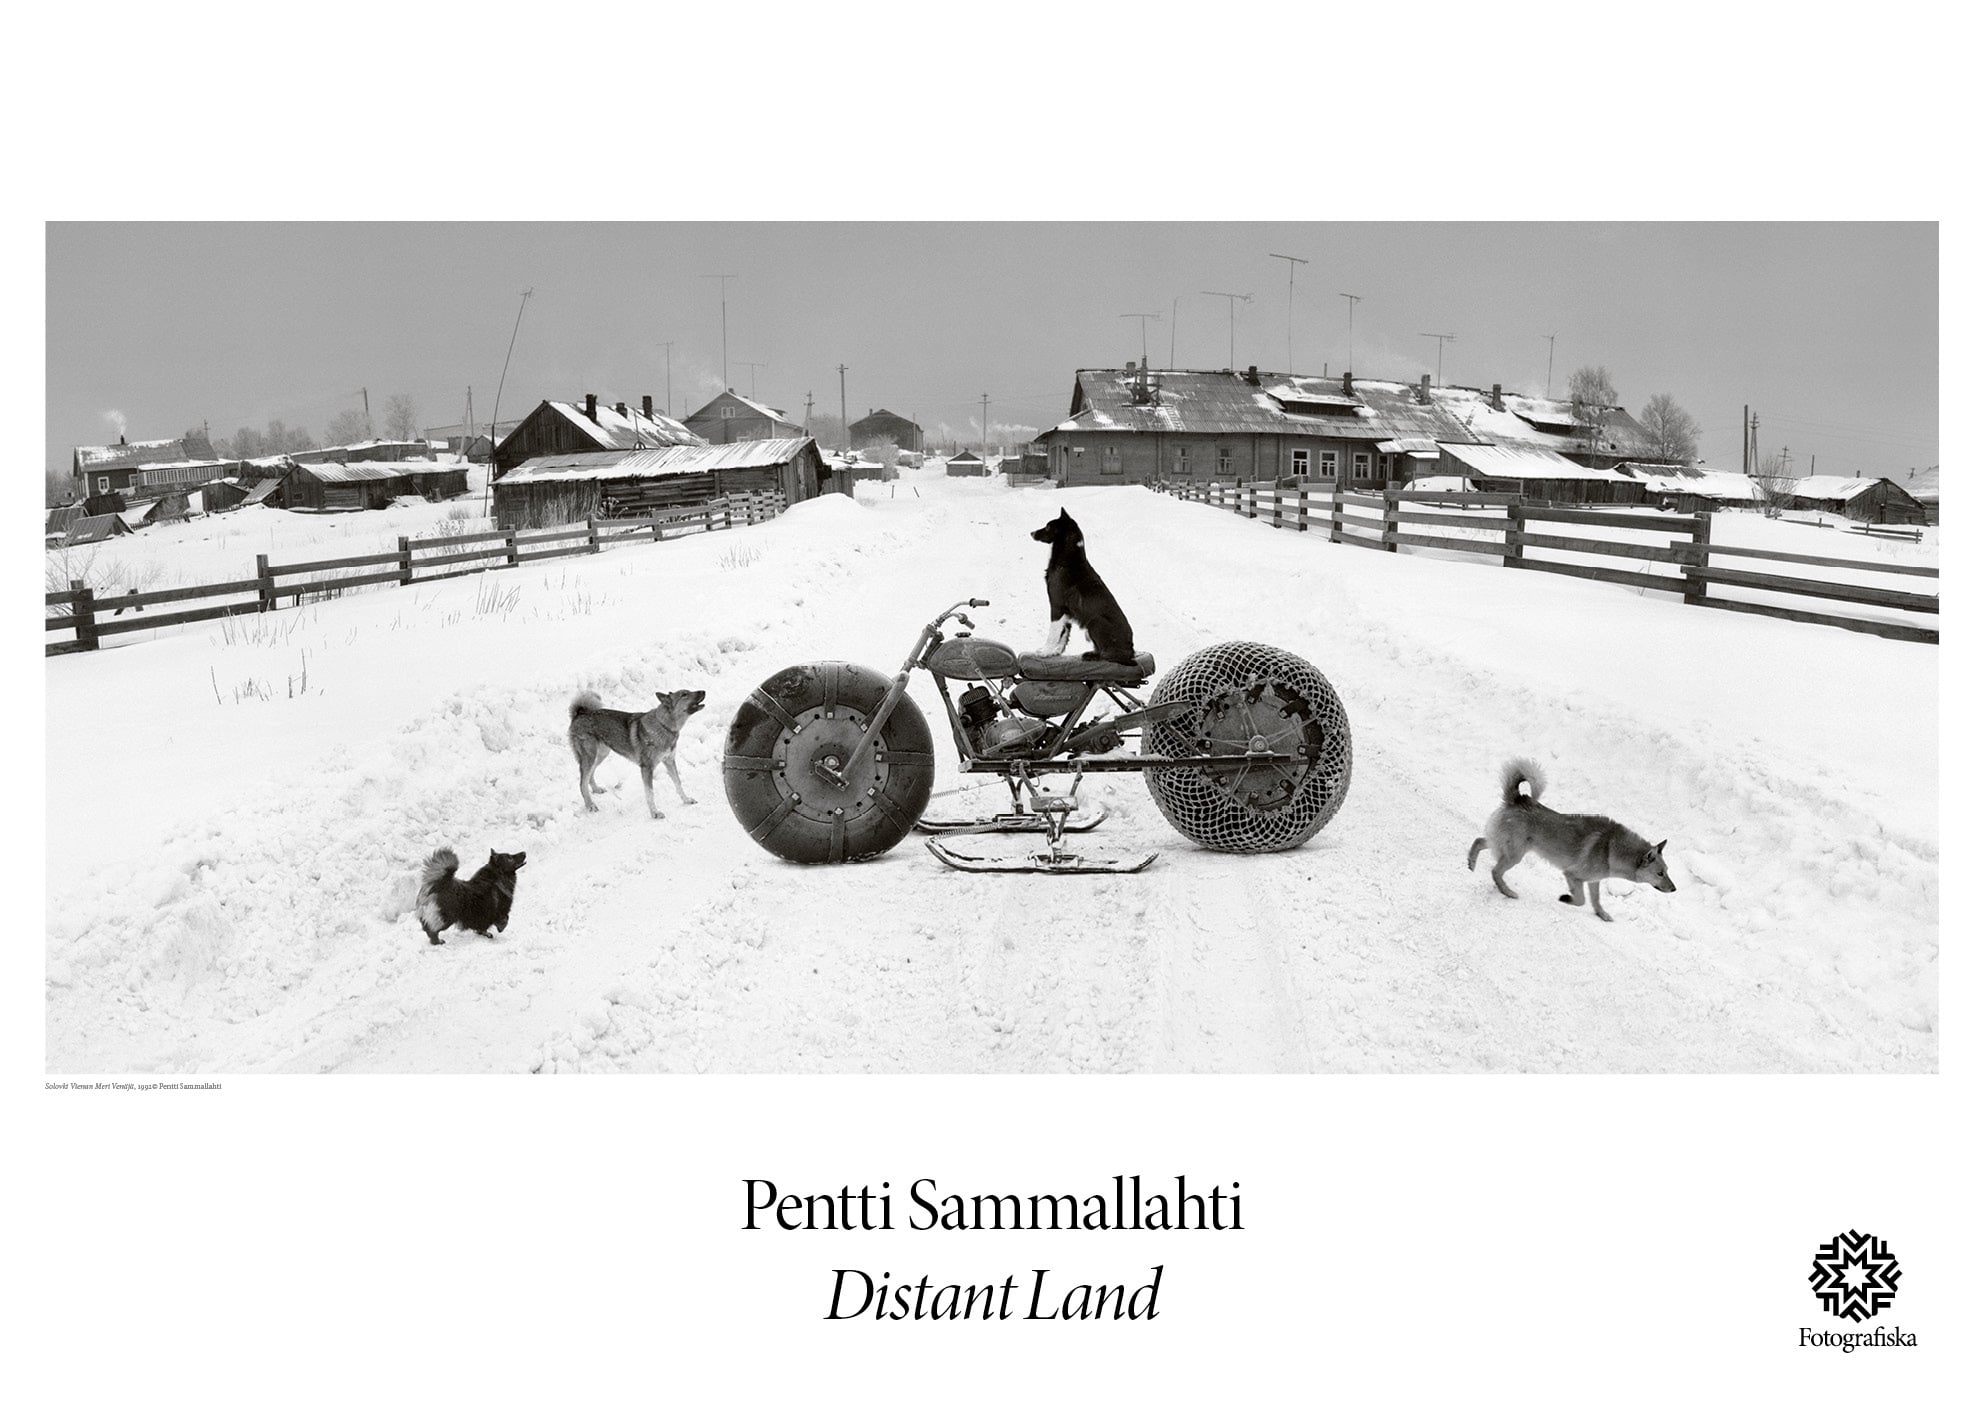 Pentti Sammallahti, Solovoki Vienan Dog #5748